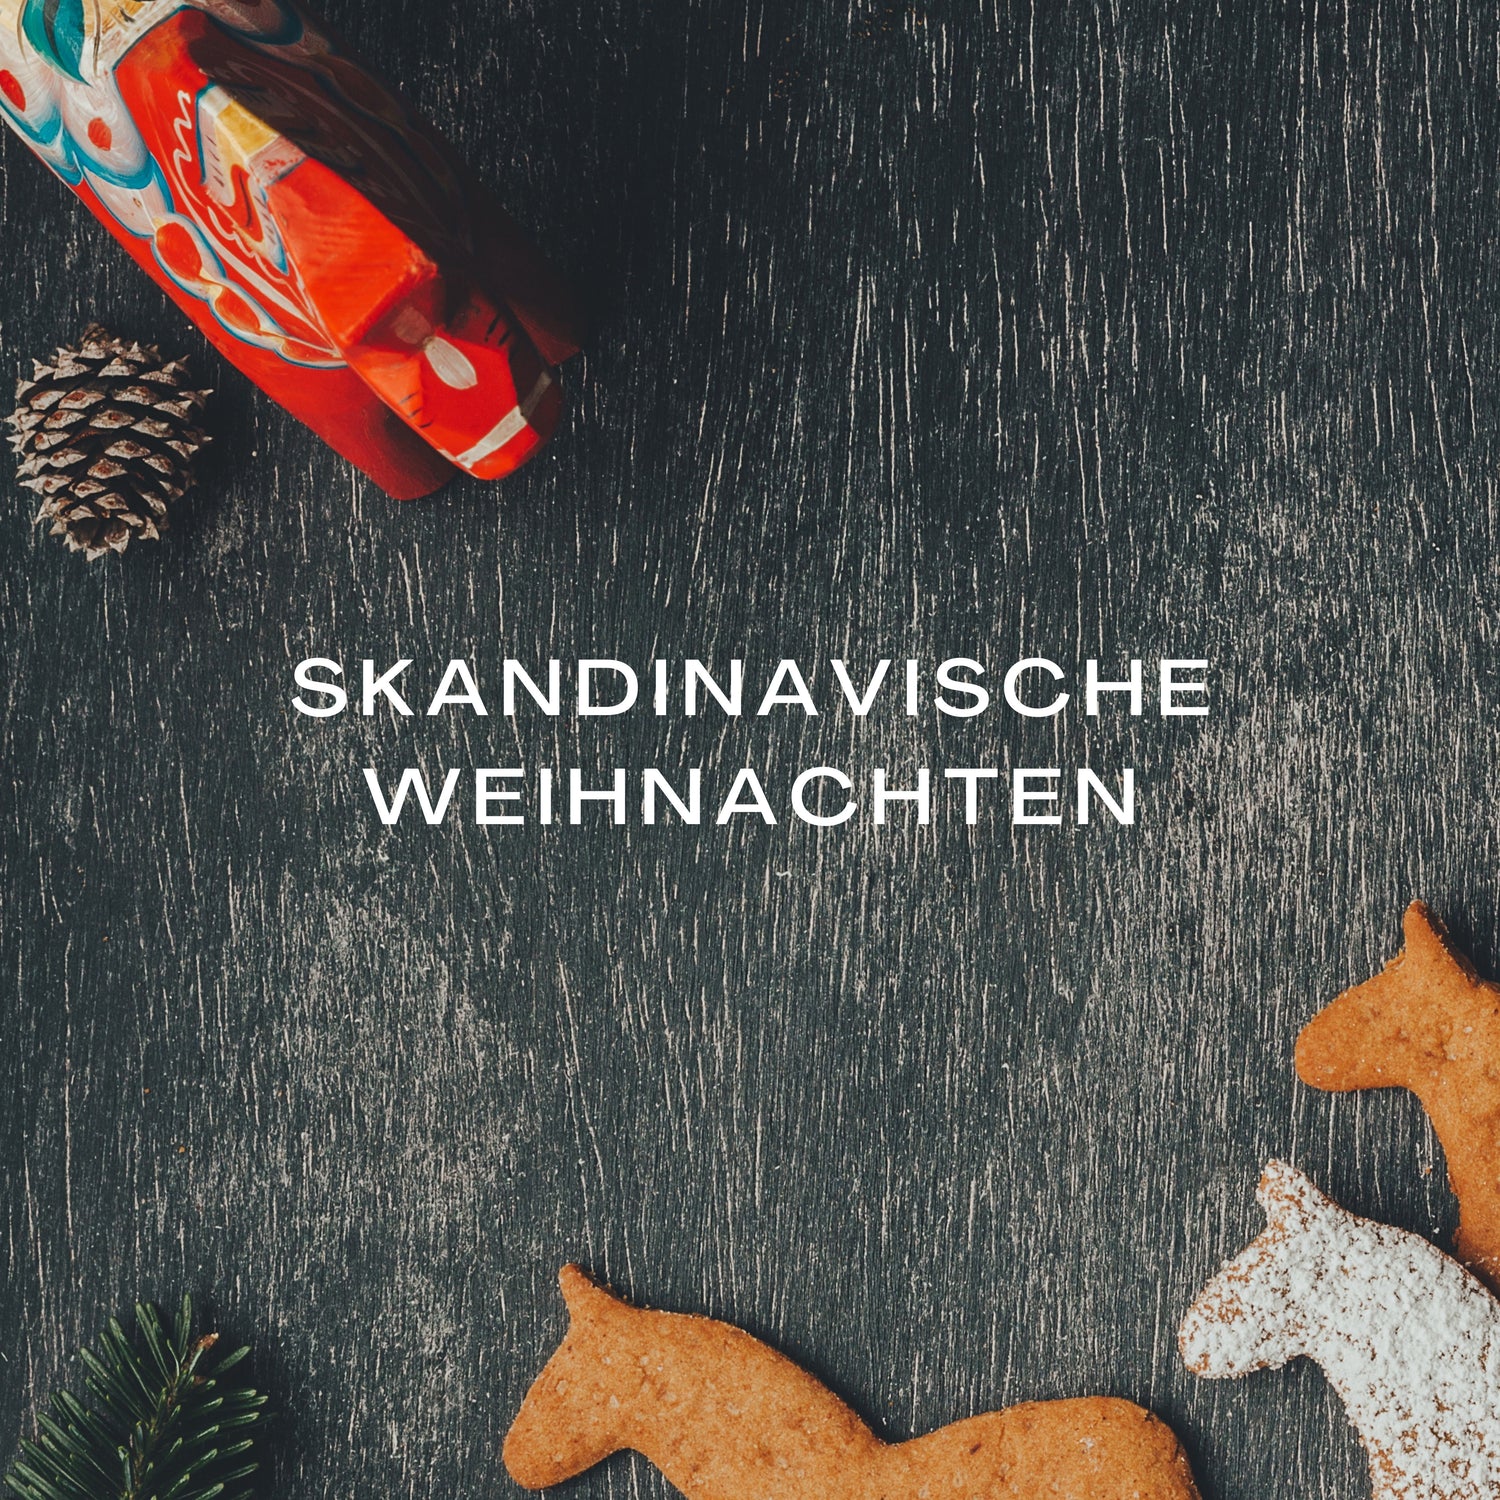 Skandinavische Weihnachten